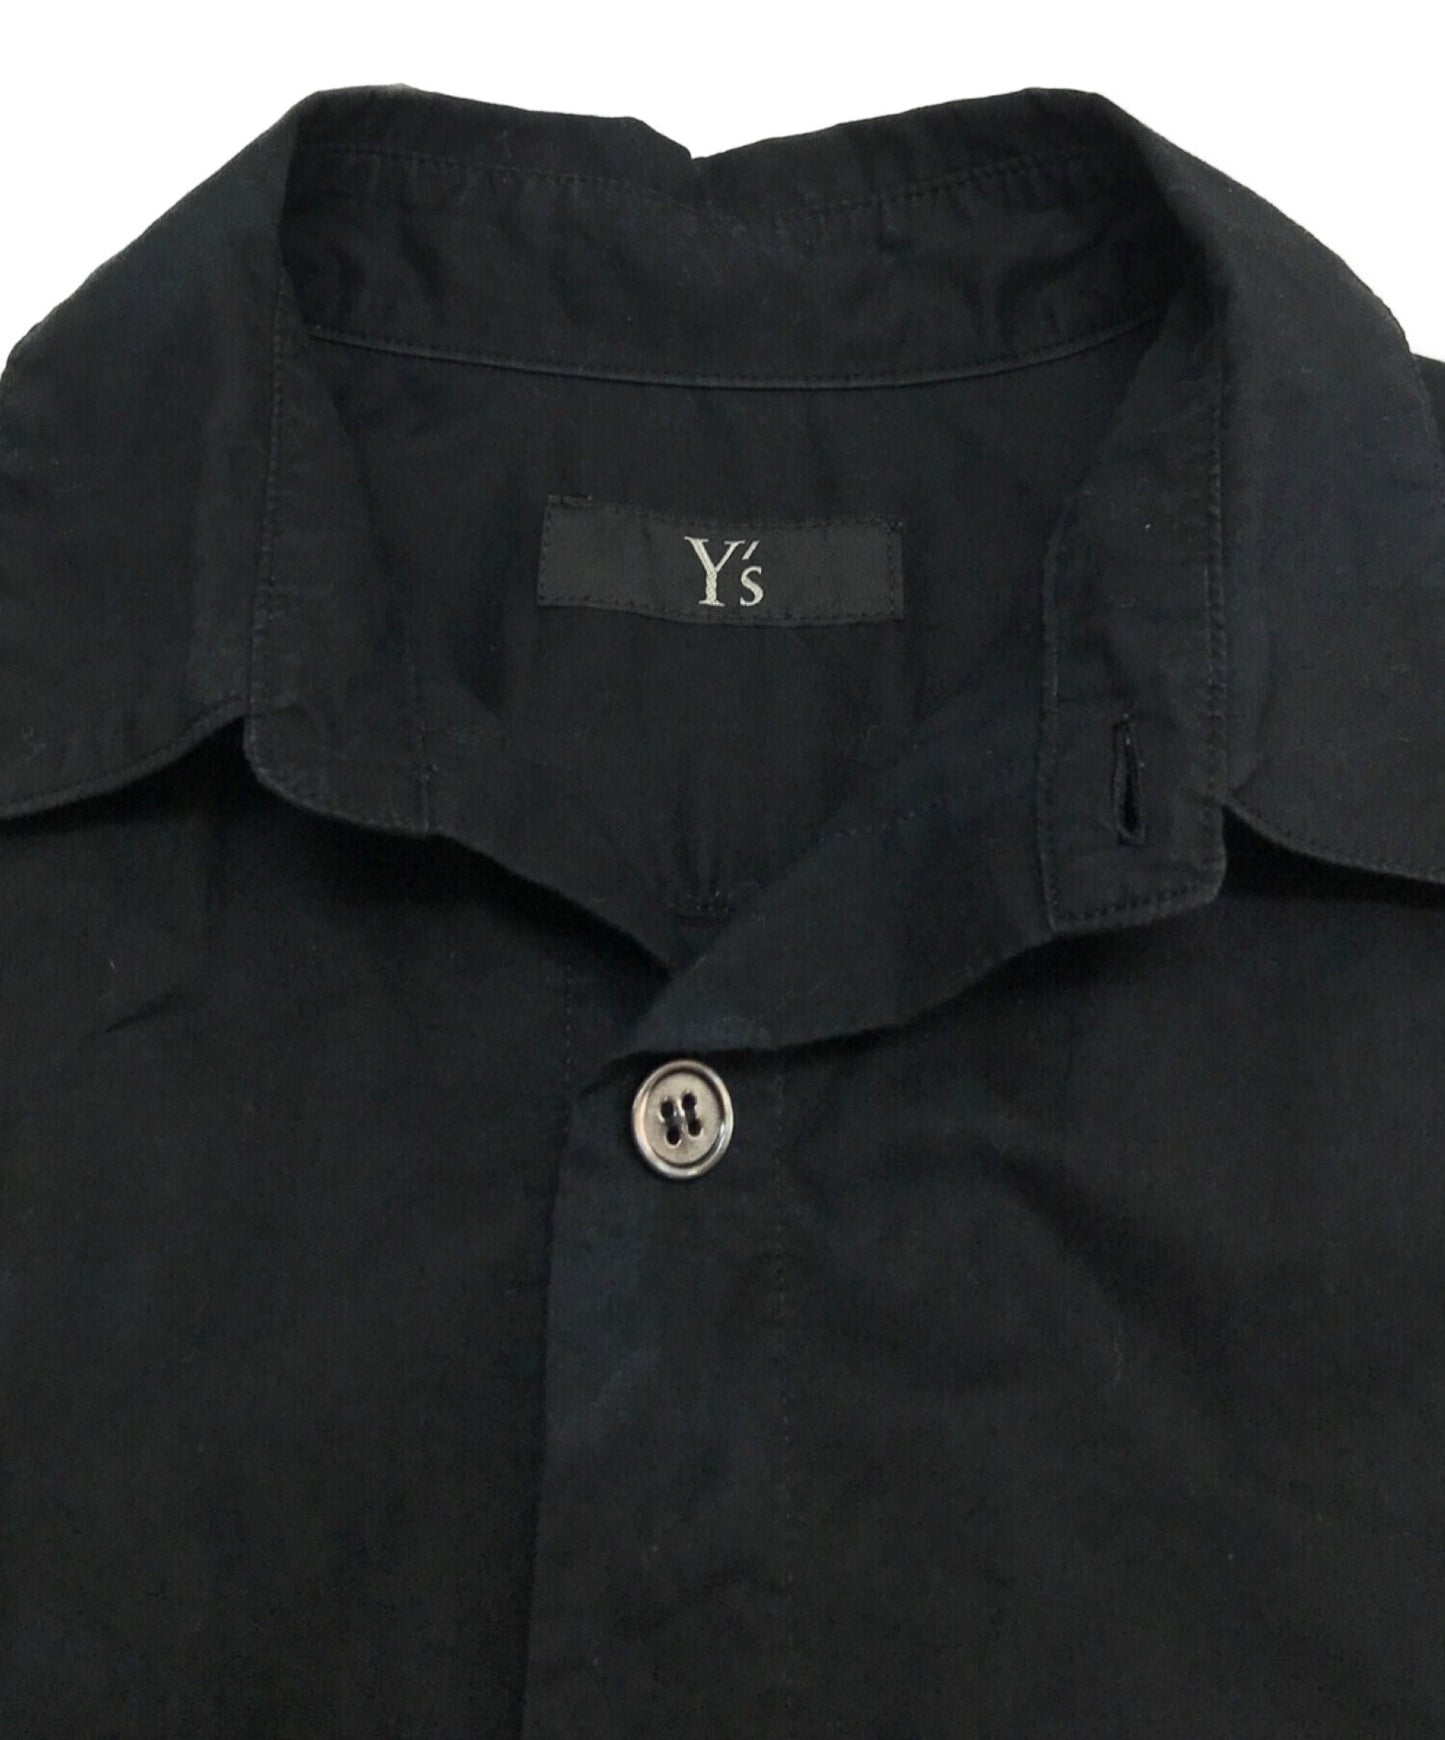 Y의 긴 셔츠 / 긴 슬리브 셔츠 / 디자인 셔츠 / 블라우스 / 단단한 셔츠 YX-B08-001